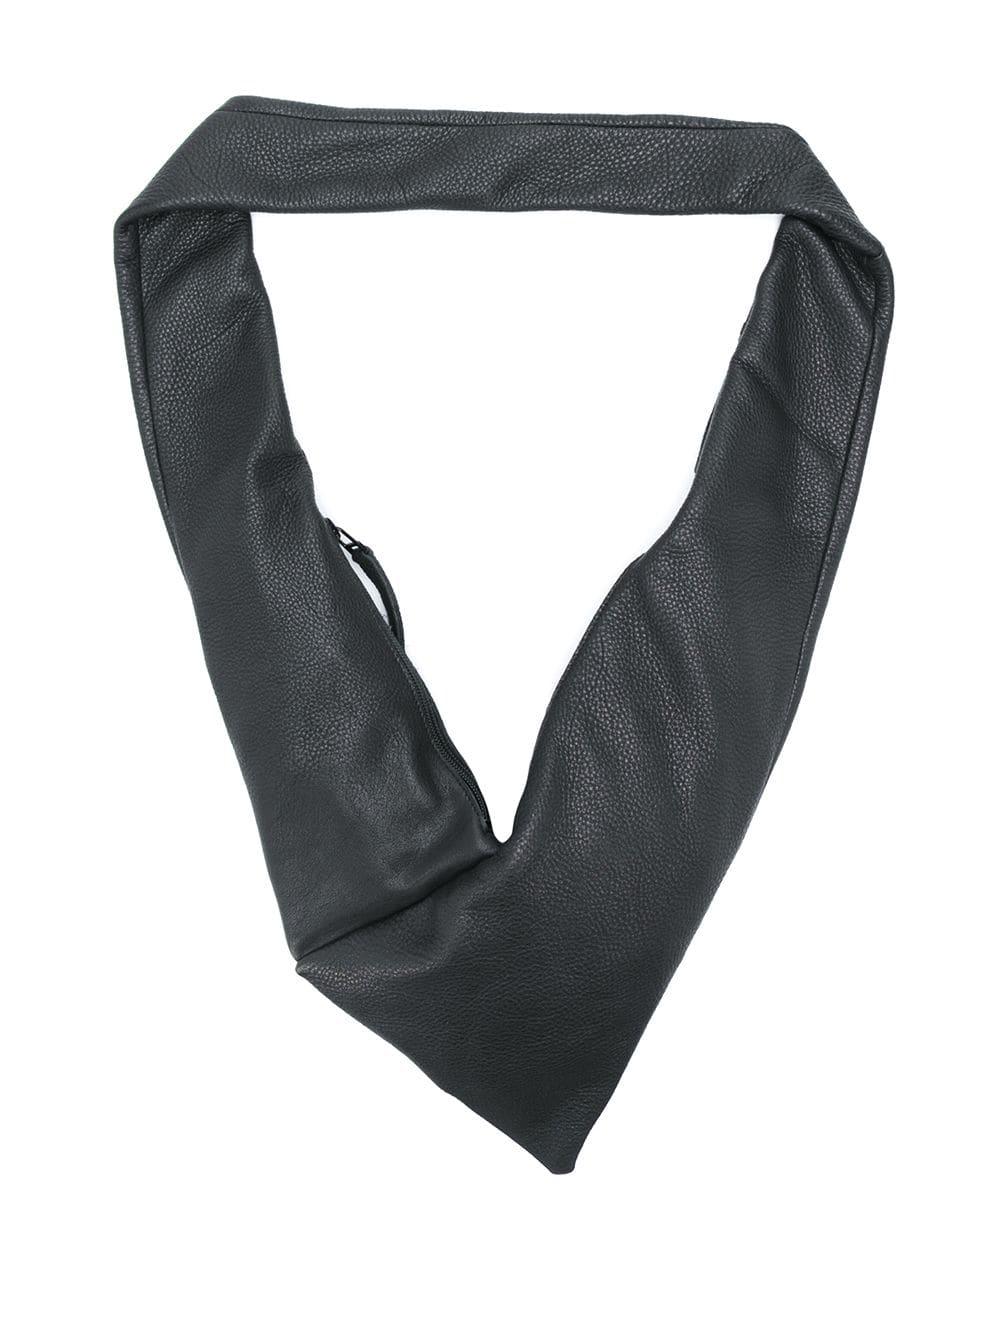 Trippen Leather Narrow Cross Body Bag in Black | Lyst